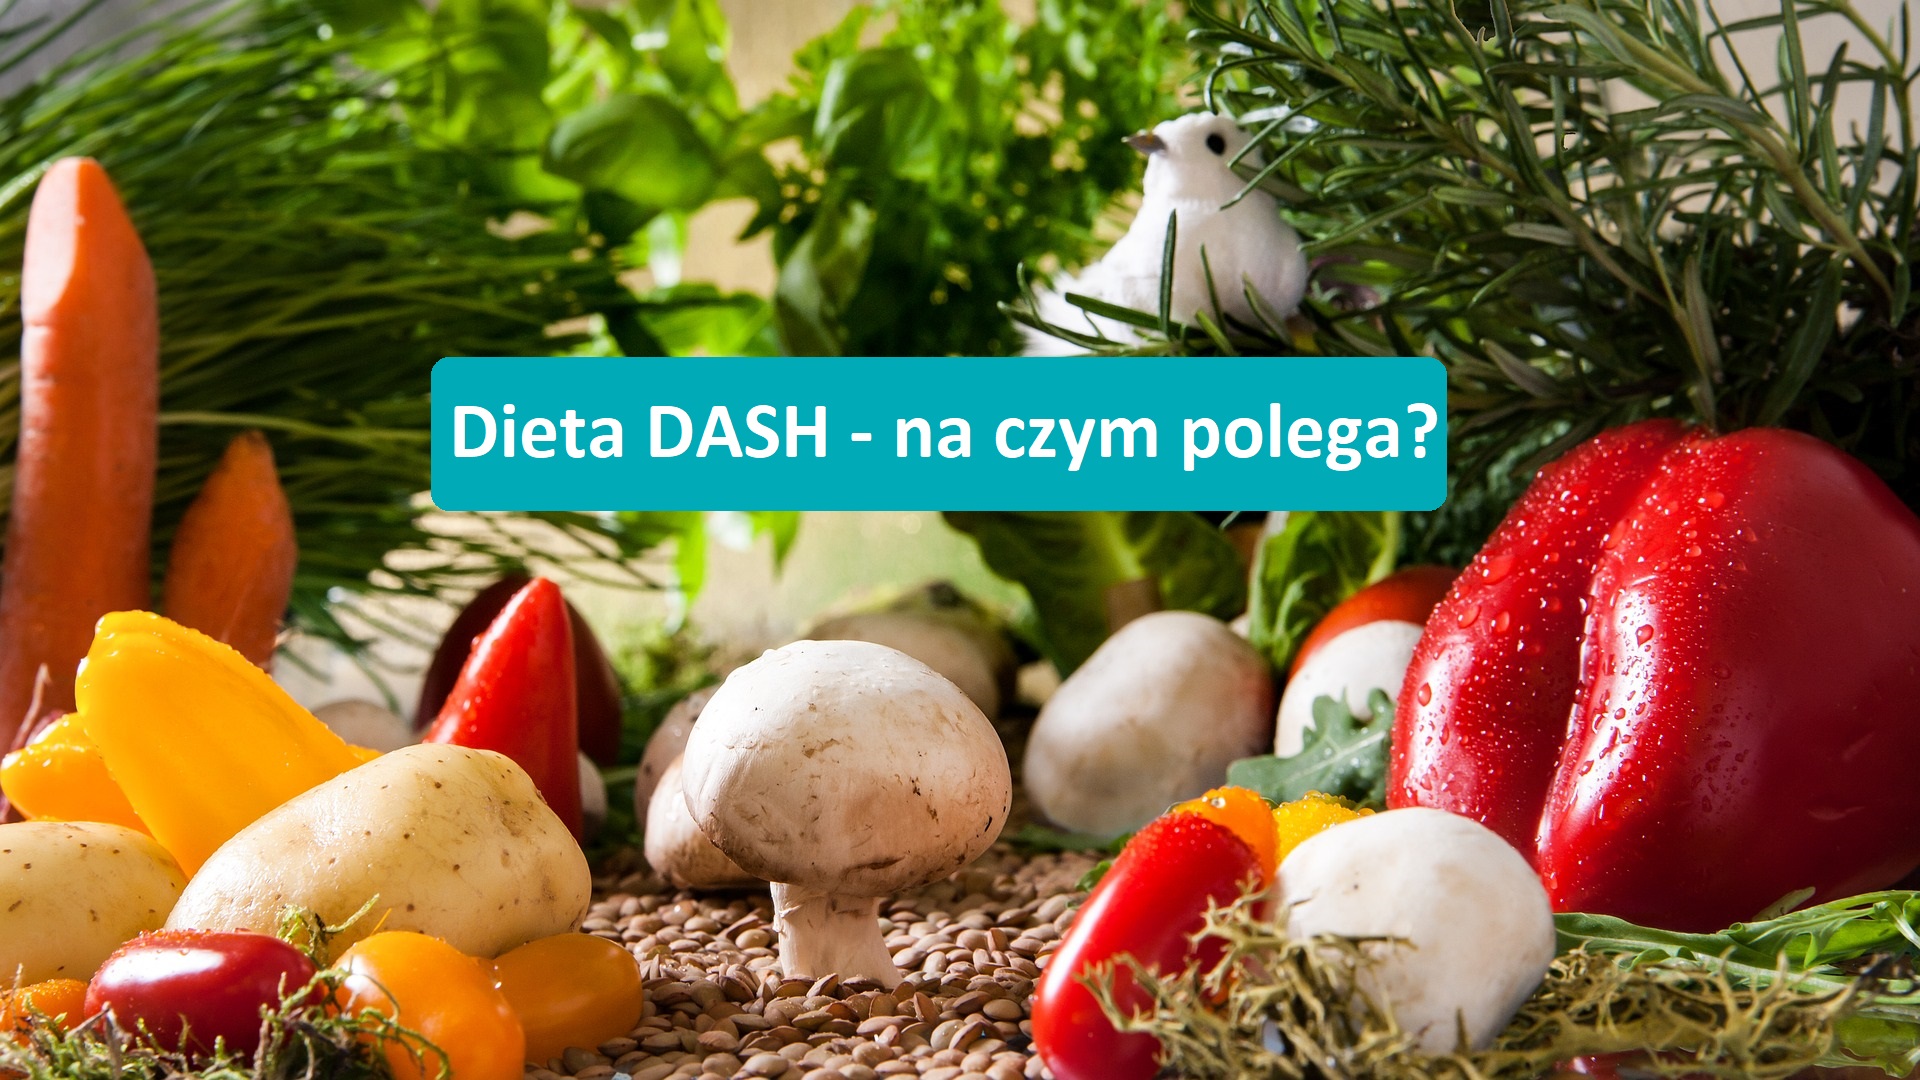 Dieta DASH – na czym polega? Charakterystyka i zalecenia.